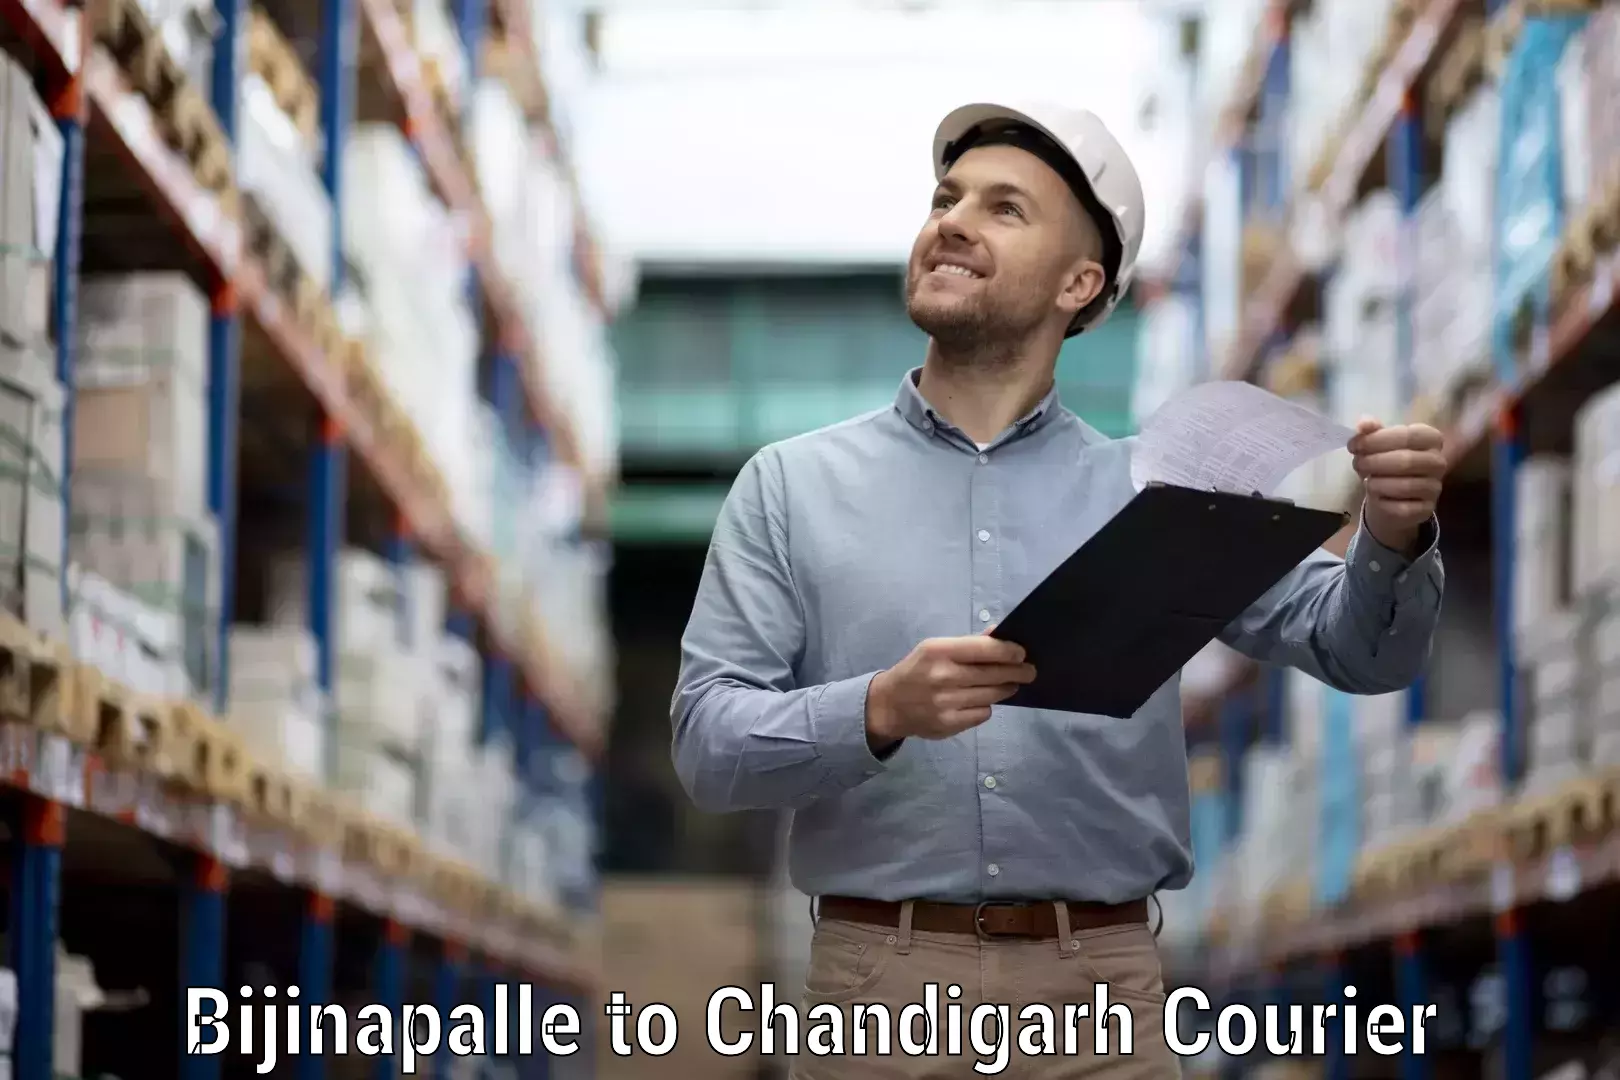 Efficient parcel service Bijinapalle to Chandigarh